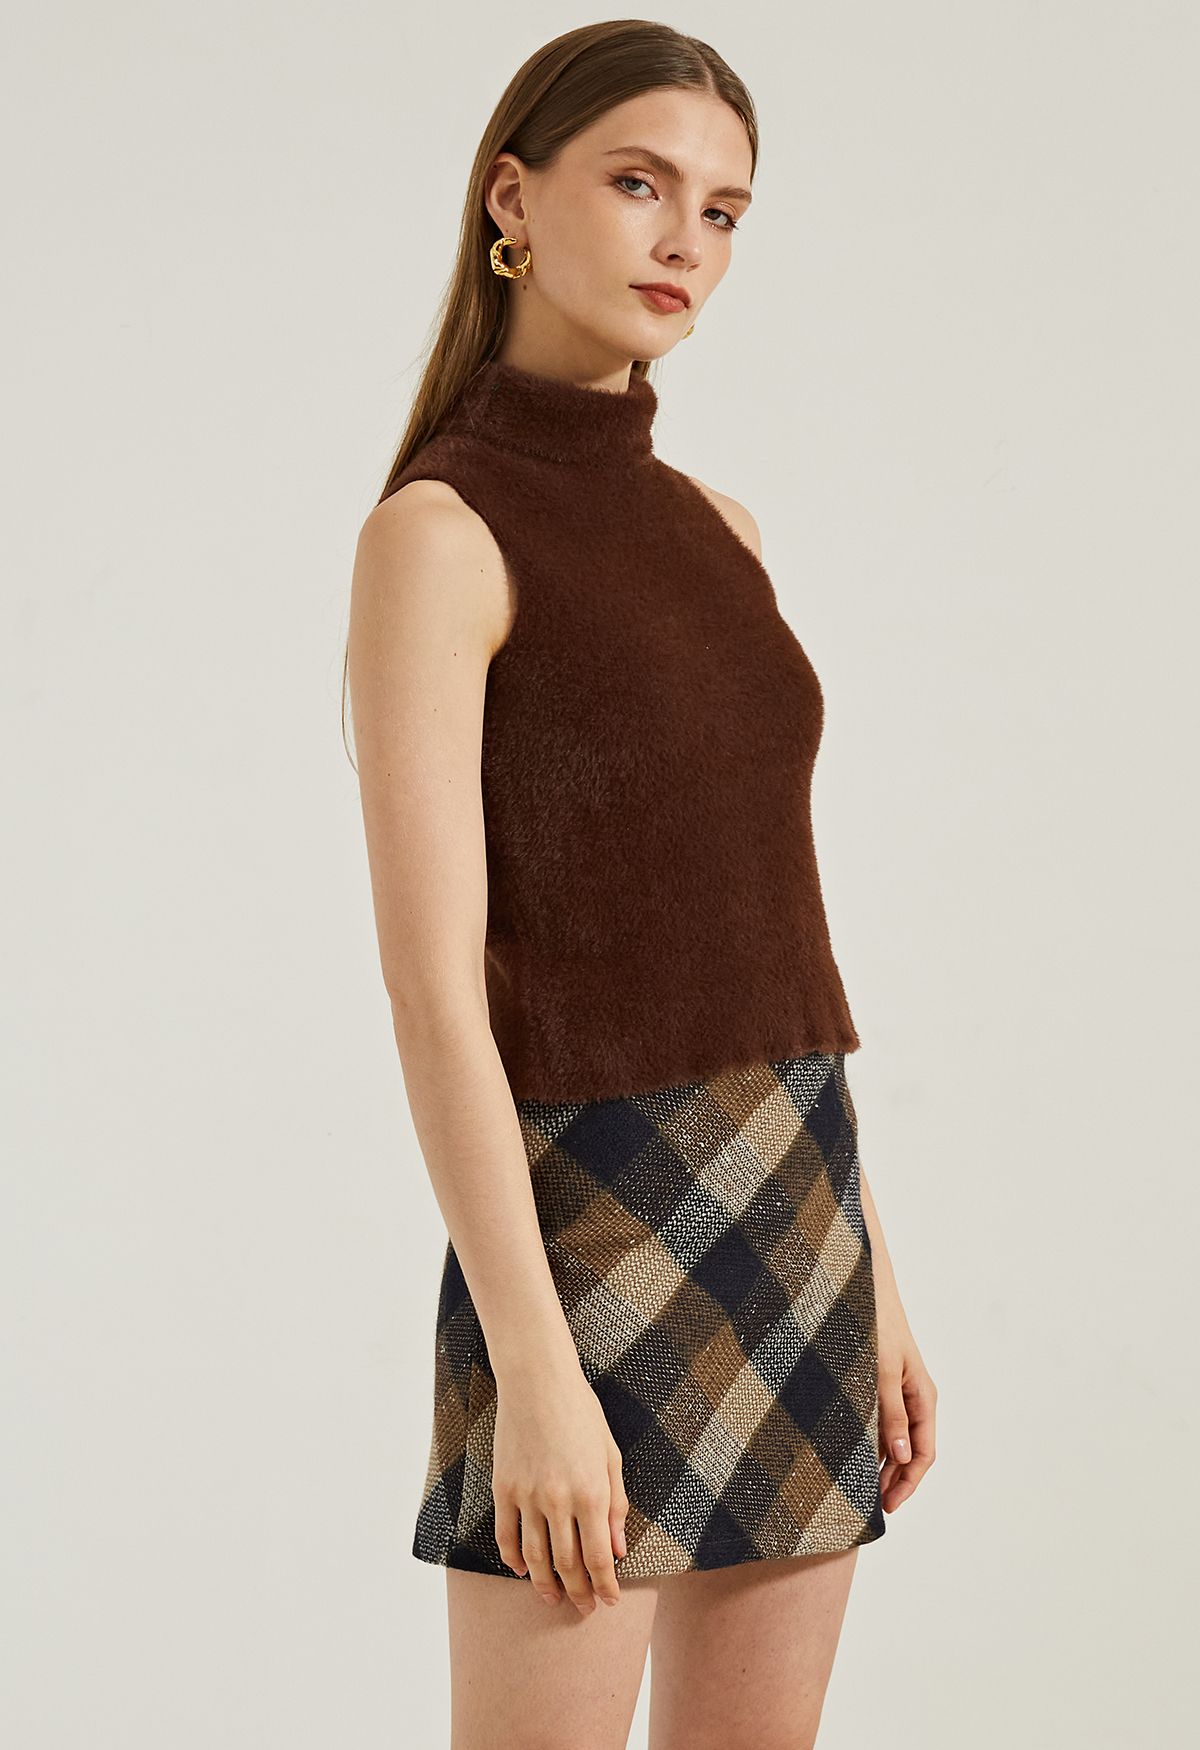 Minigonna in tweed a quadri retrò color marrone chiaro